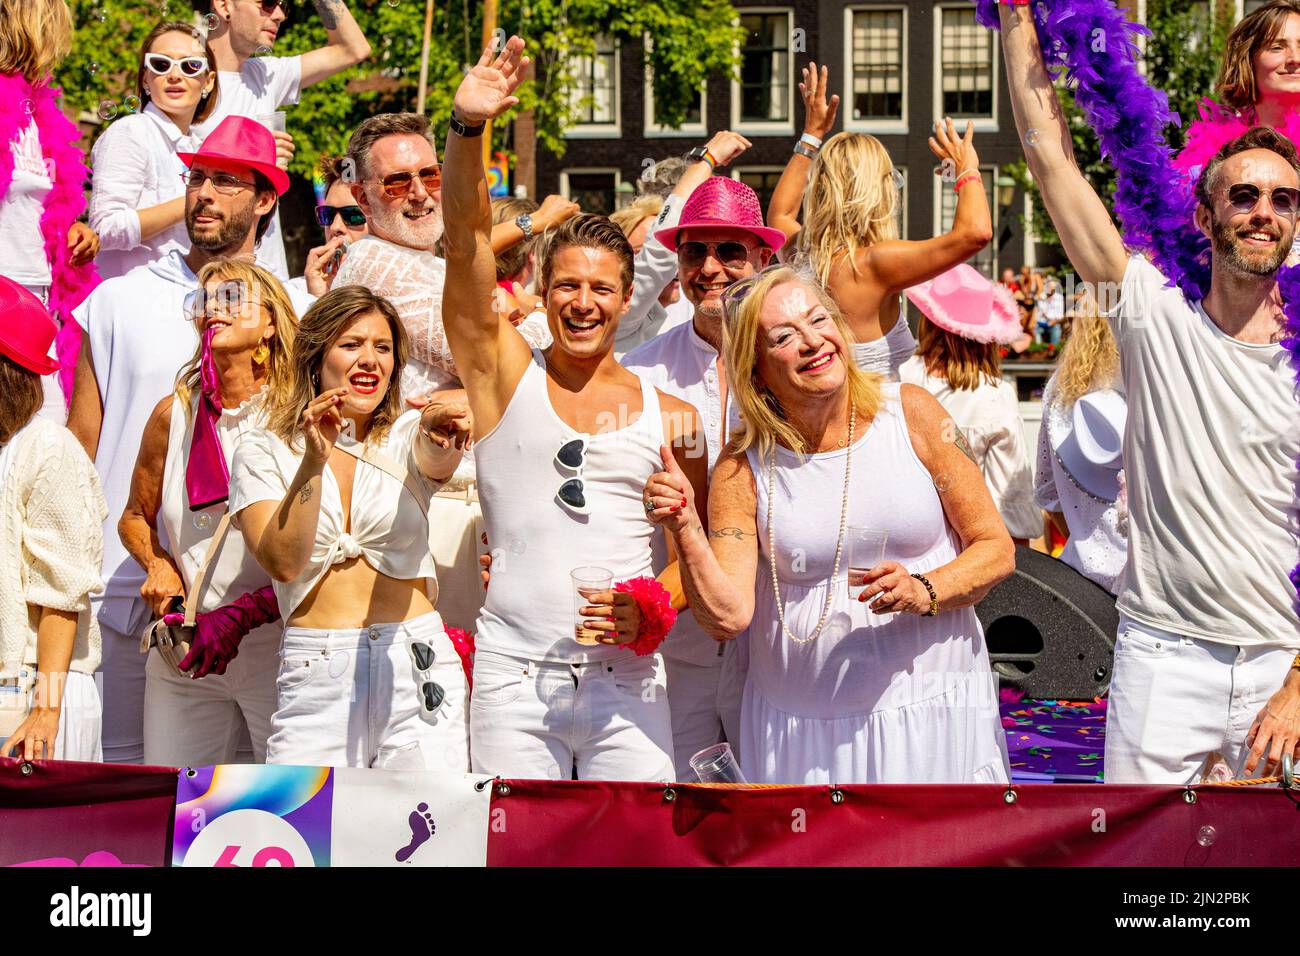 Die Menschen genießen die Grachtenparade durch die Grachten von Amsterdam während der Pride 2022. Die Parade ist die Hauptereignis von Pride Amsterdam 2022, einem Festival für die LGBTQ+ Gemeinschaft, mit dem diesjährigen Thema My Gender, My Pride. (Foto von DPPA/Sipa USA) Stockfoto